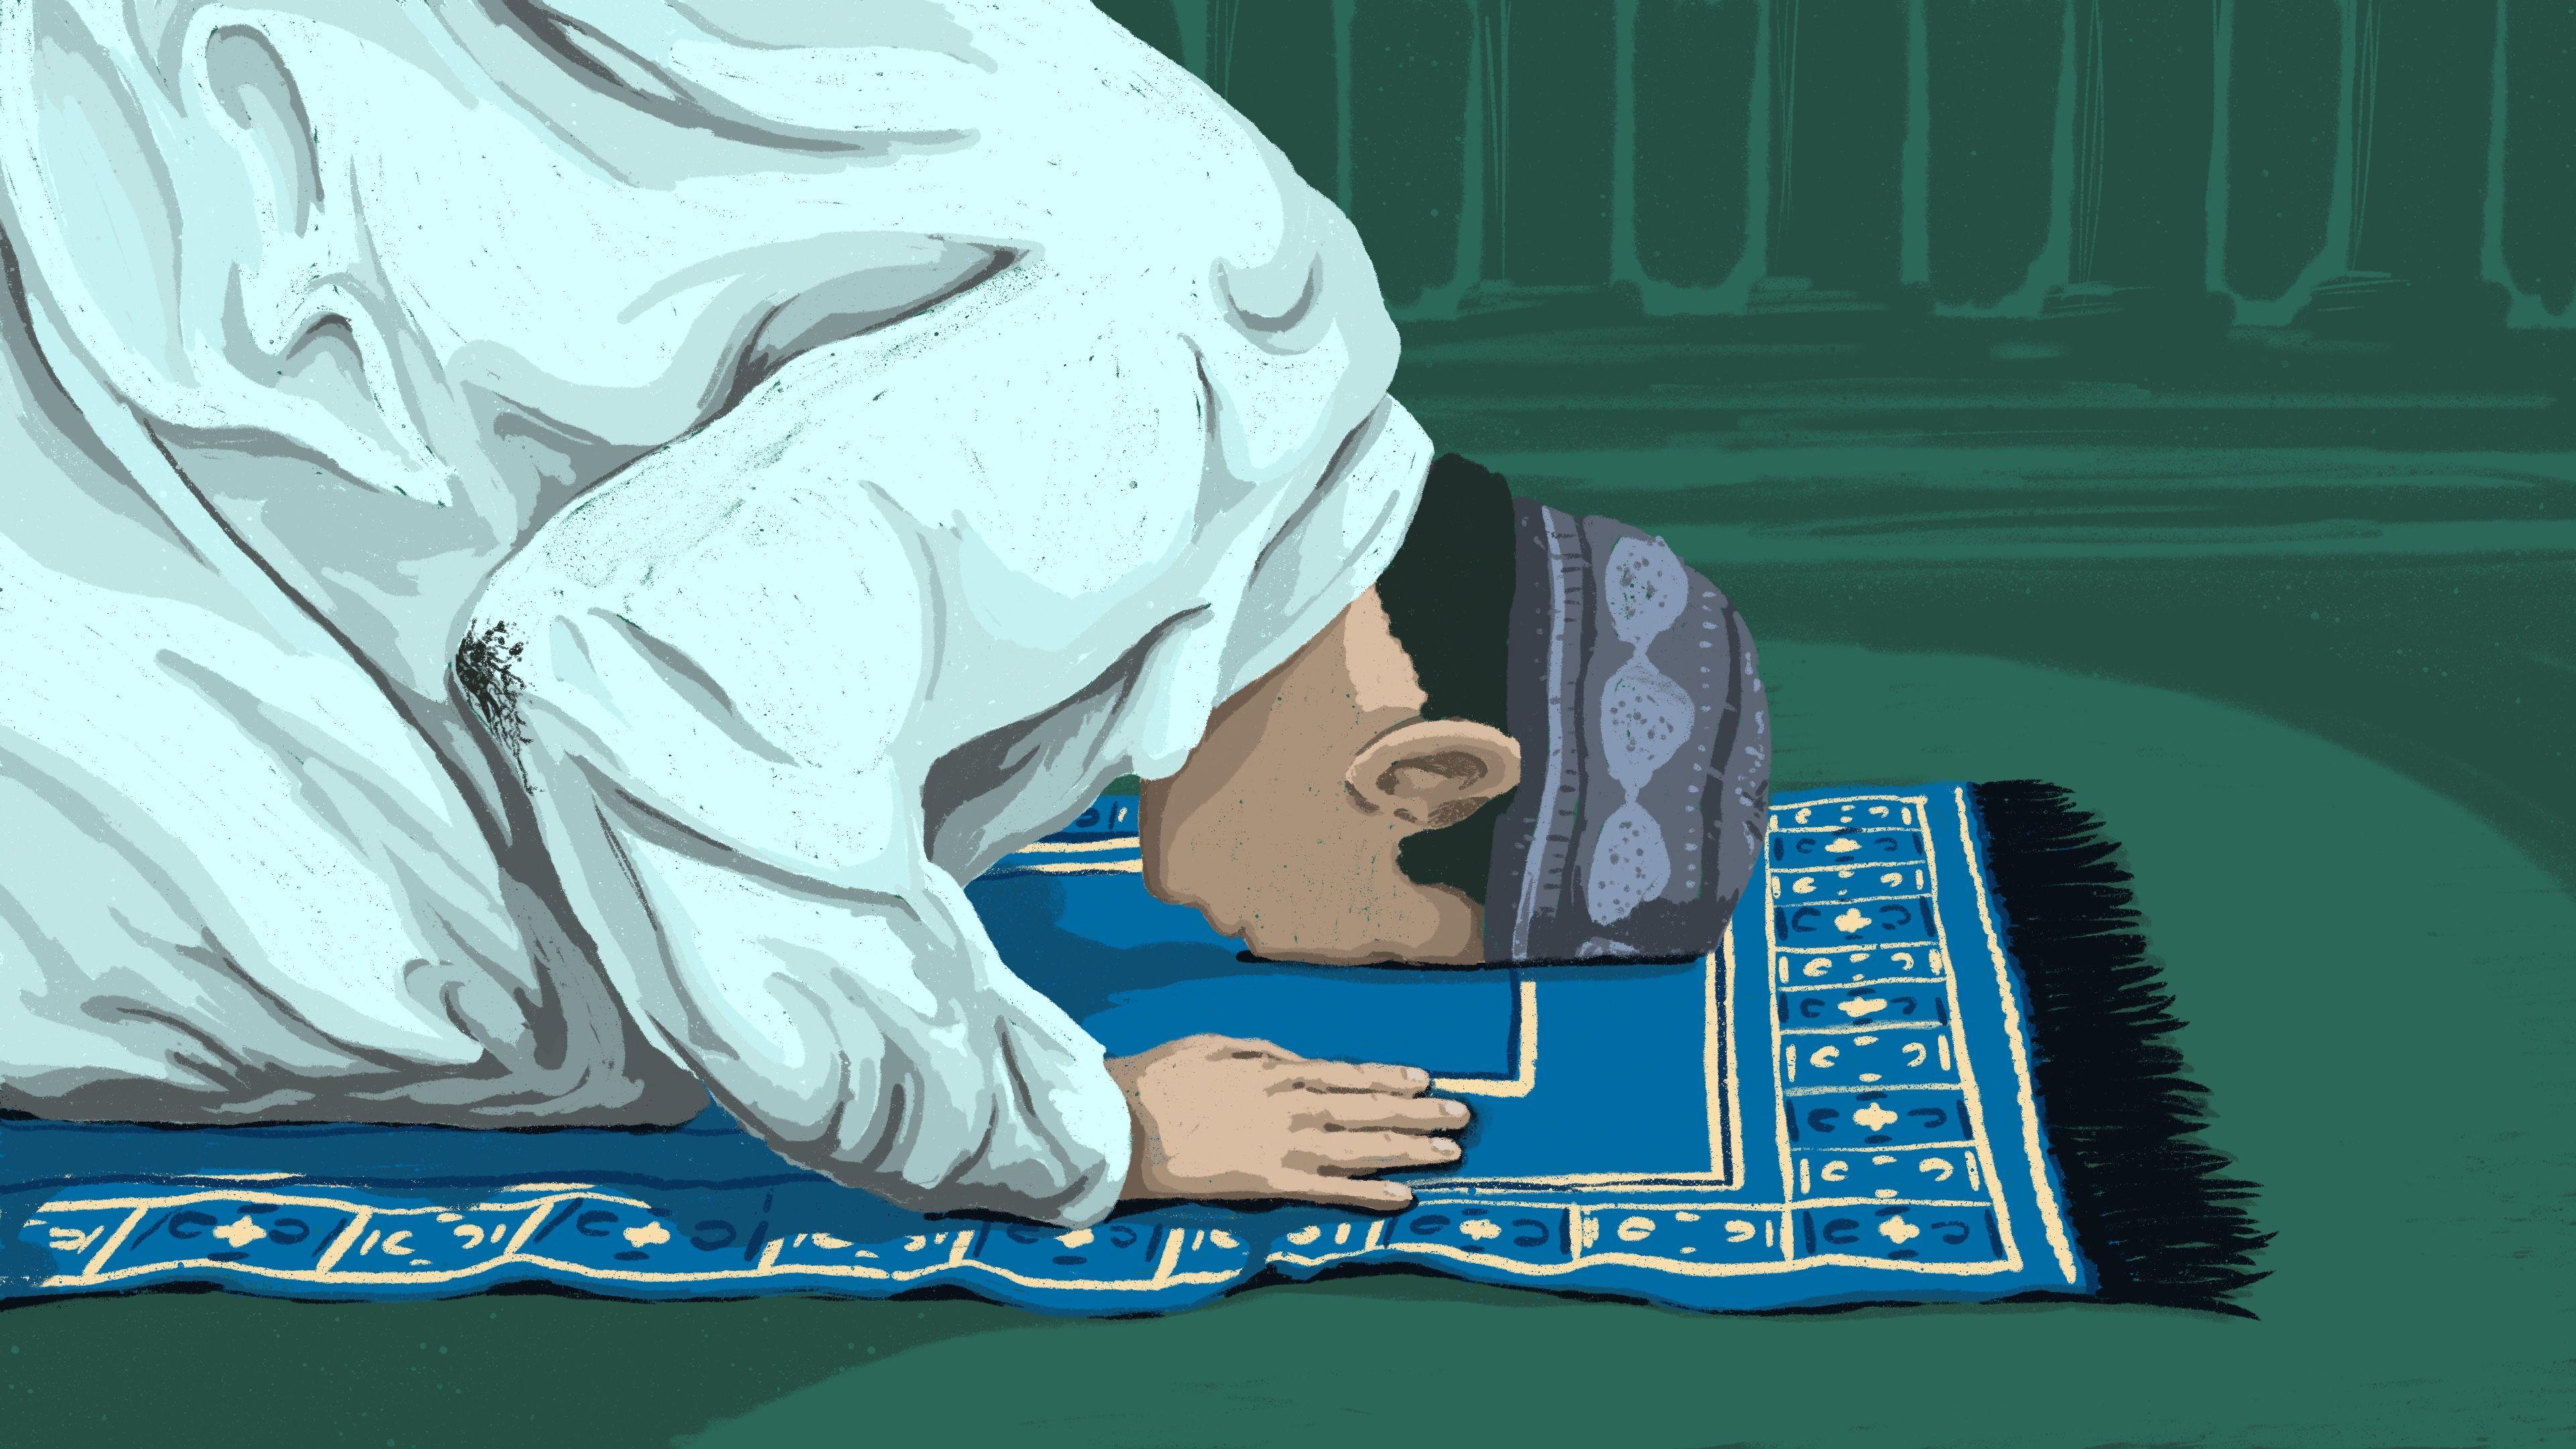 muslim-prayer-wallpapers-wallpaper-cave